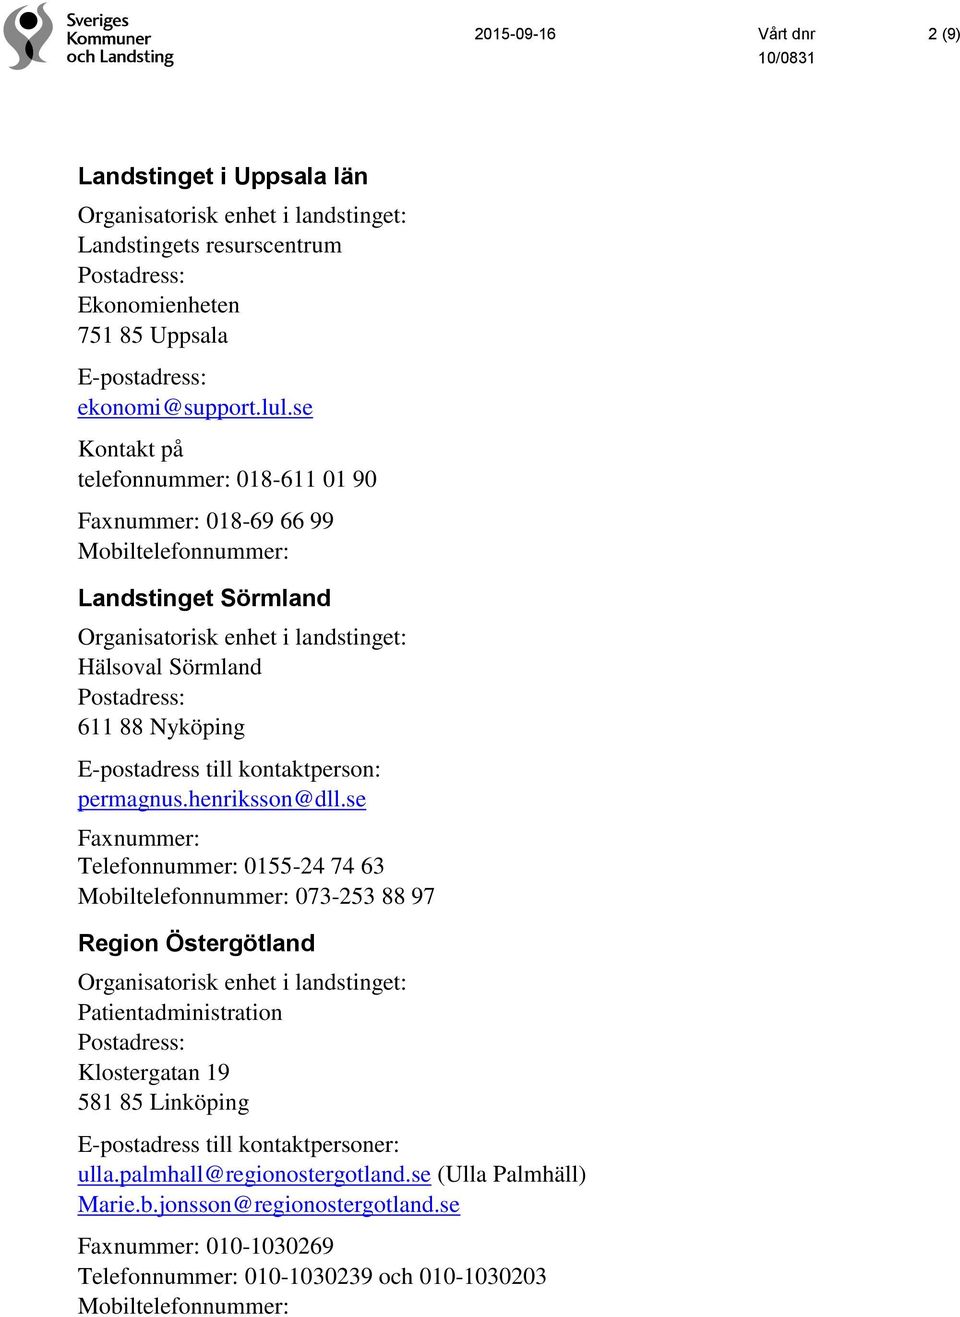 se Faxnummer: Telefonnummer: 0155-24 74 63 073-253 88 97 Region Östergötland Patientadministration Klostergatan 19 581 85 Linköping E-postadress till